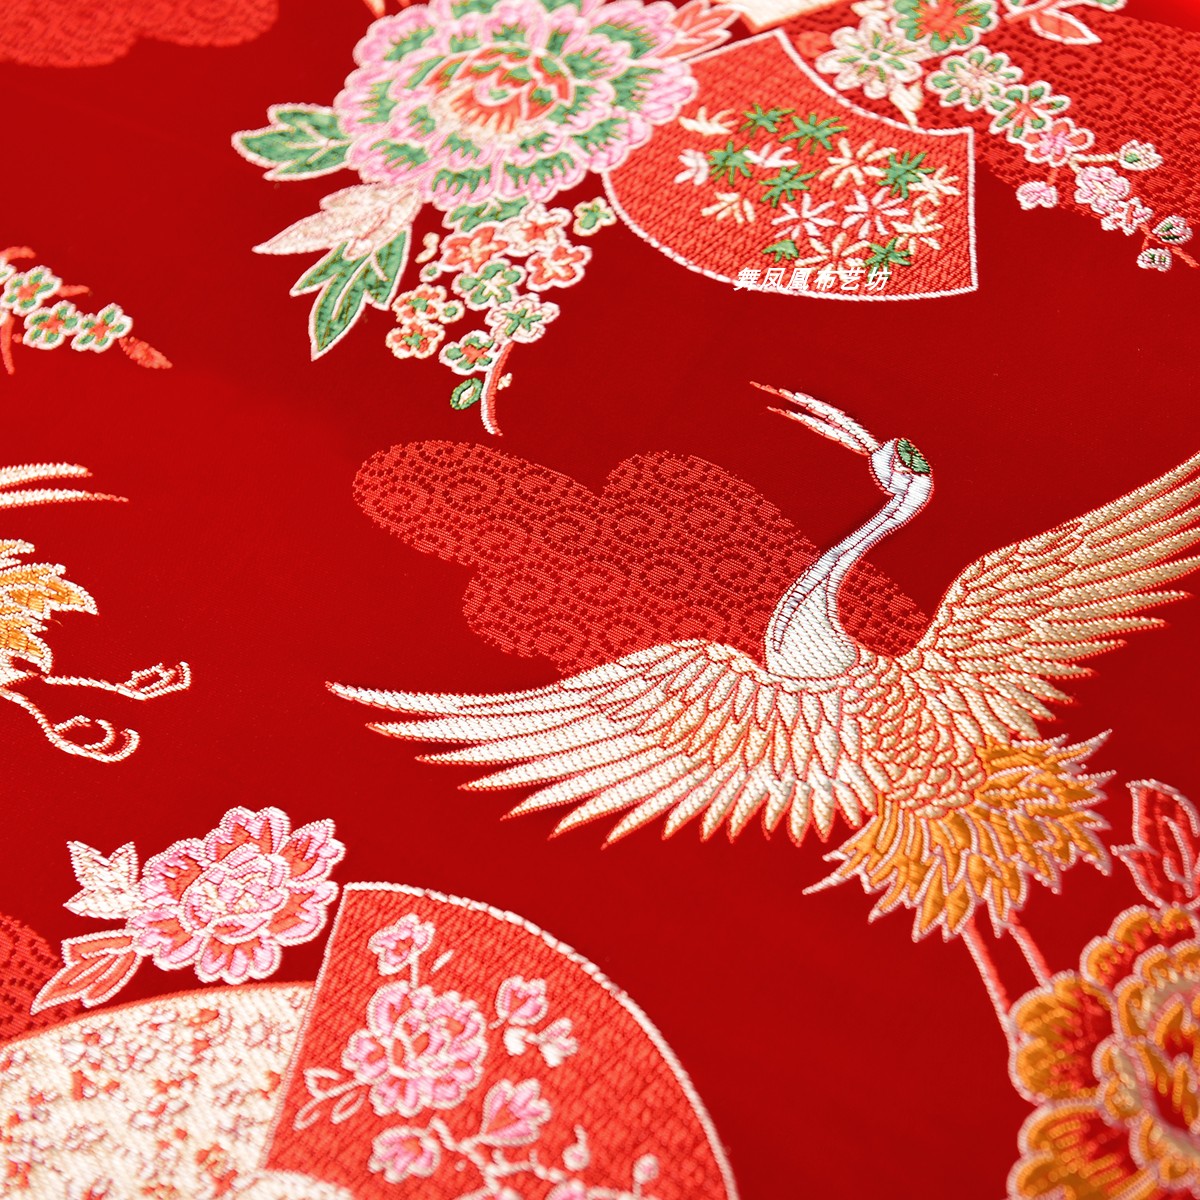 仙鹤舞花扇织锦缎提花面料 中国风红色底丝绸缎古装汉服旗袍布料